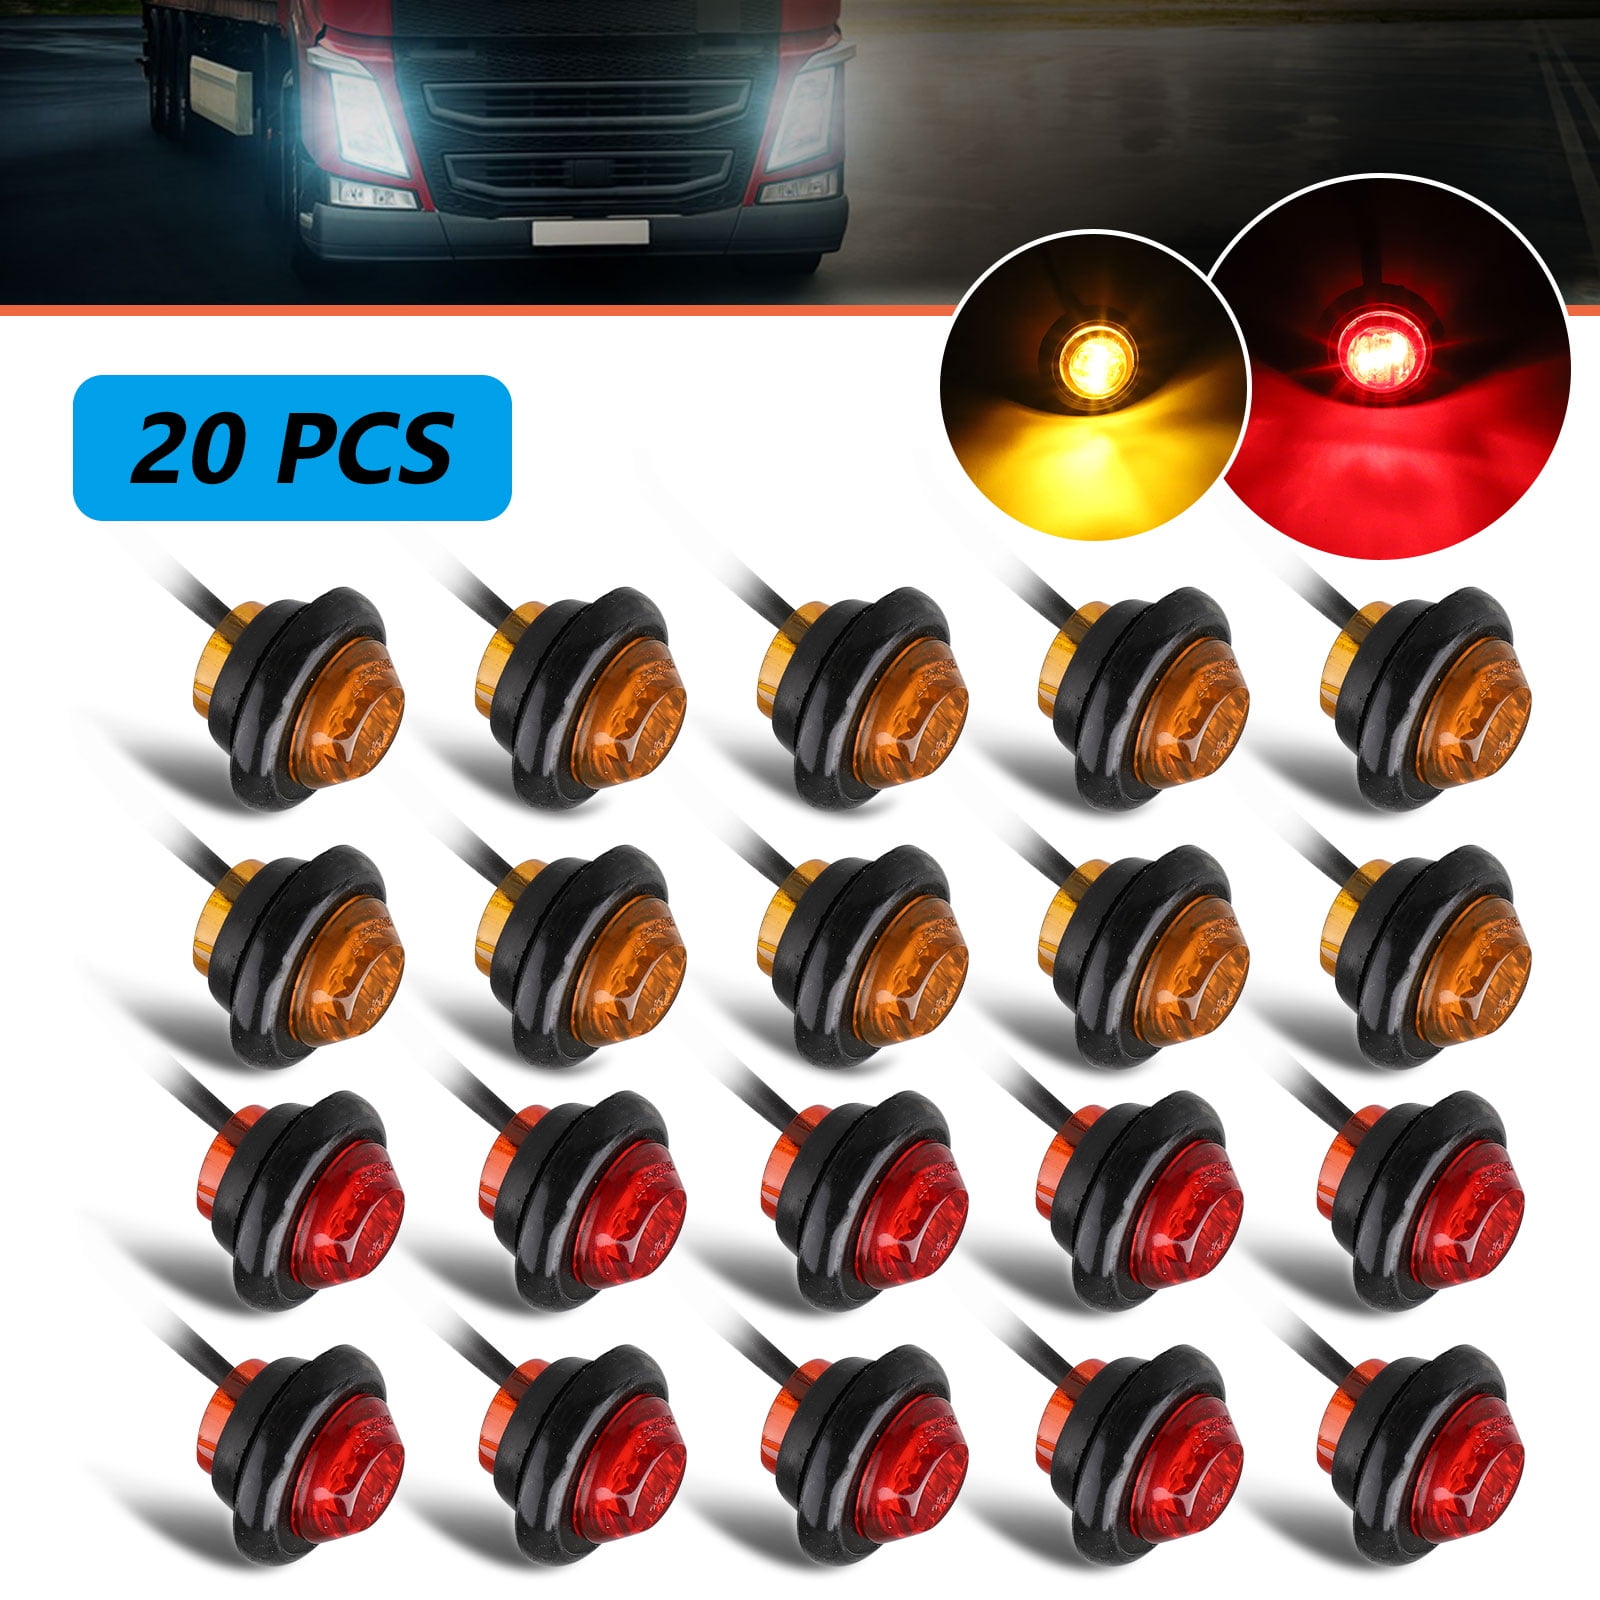 20x 3/4" Mini Bullet Amber Side Marker Lights Truck Trailer w/Chrome Grommet